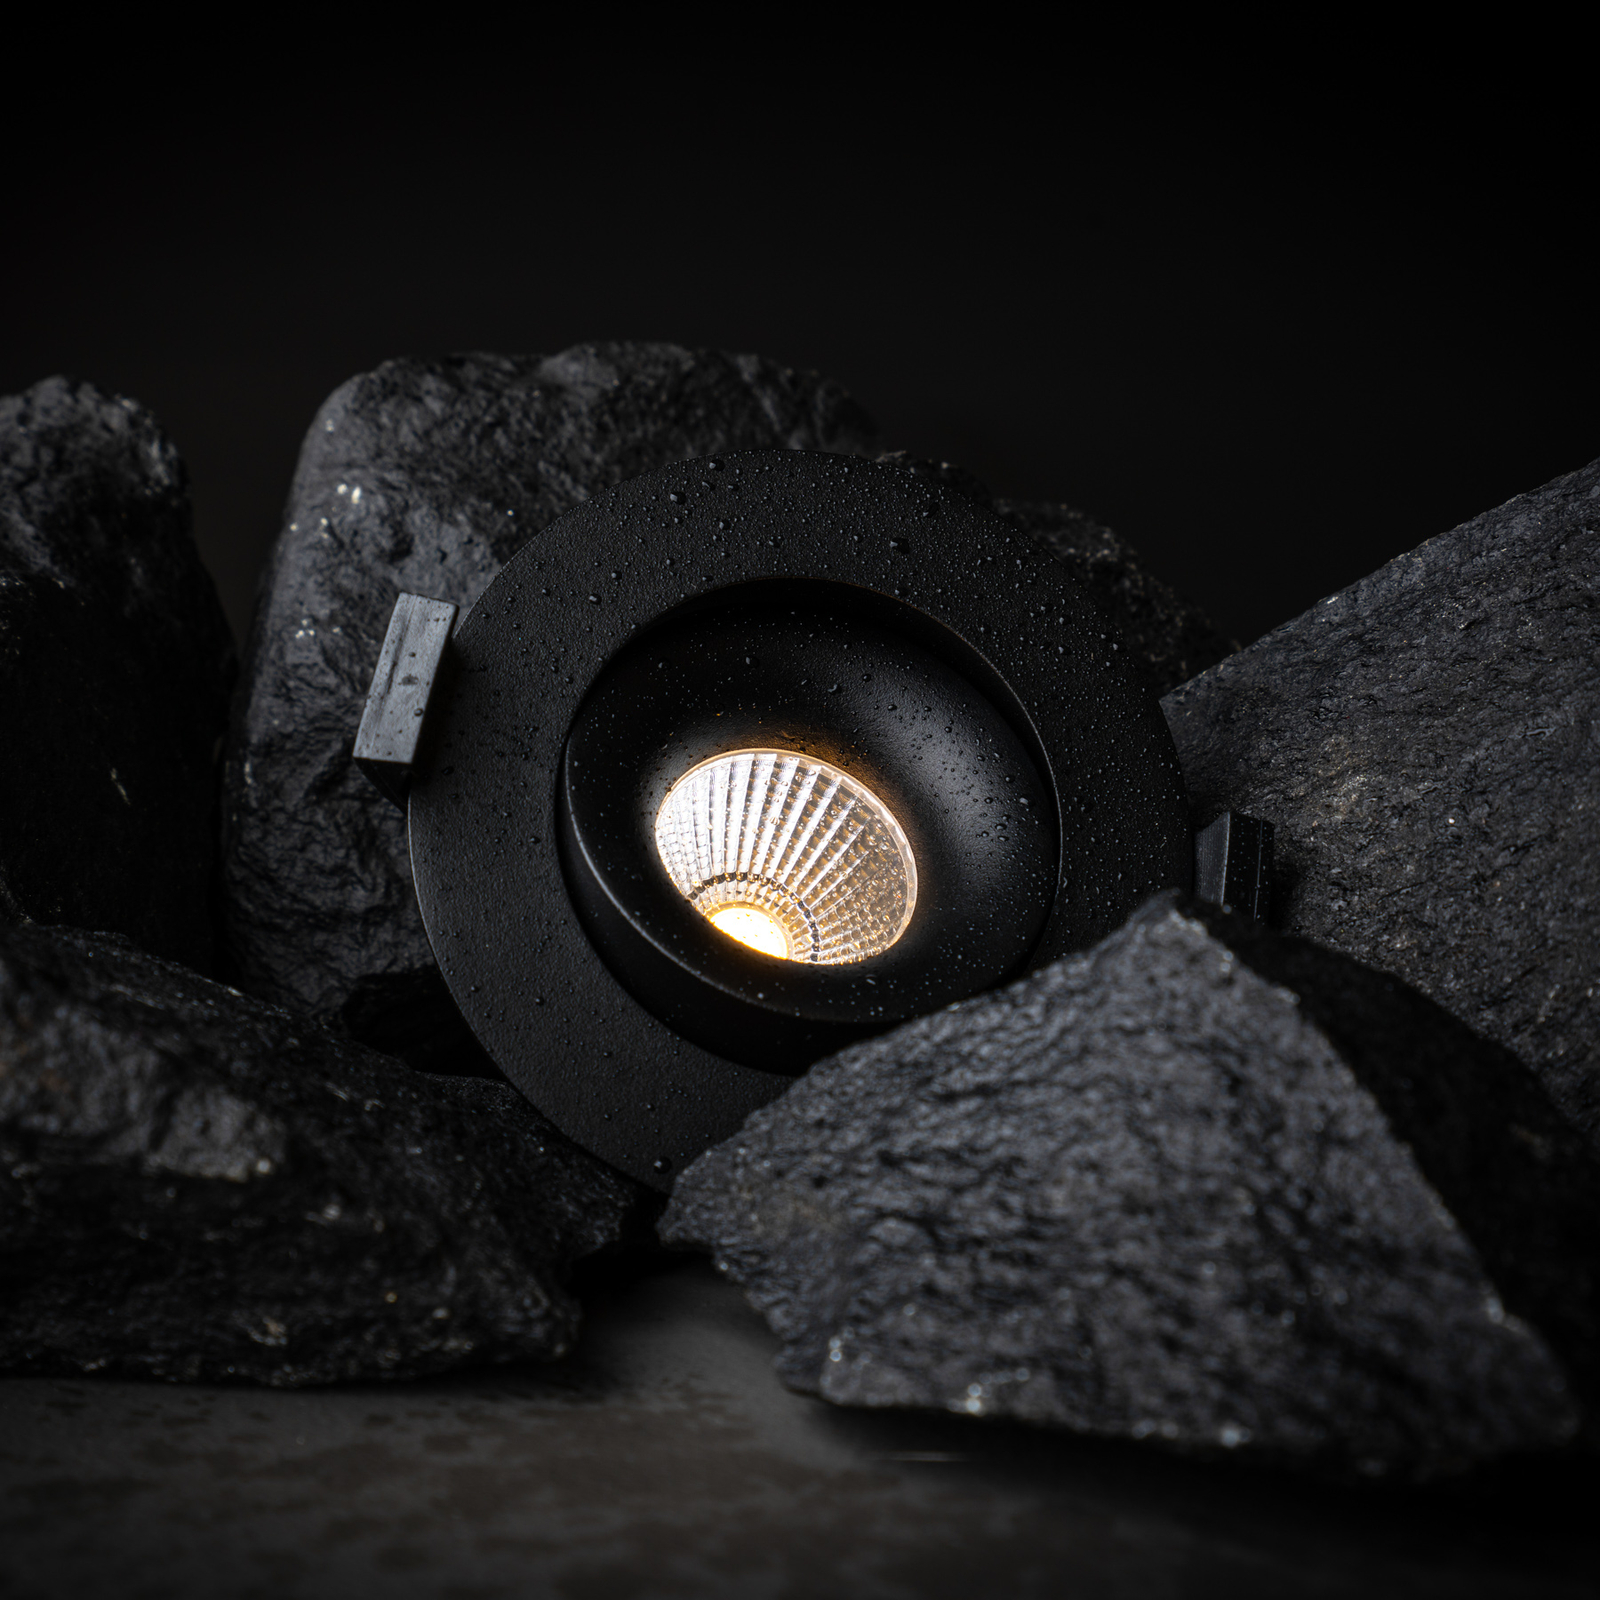 SLC OnePro LED-Einbau-Downlight schwarz 3.000 K